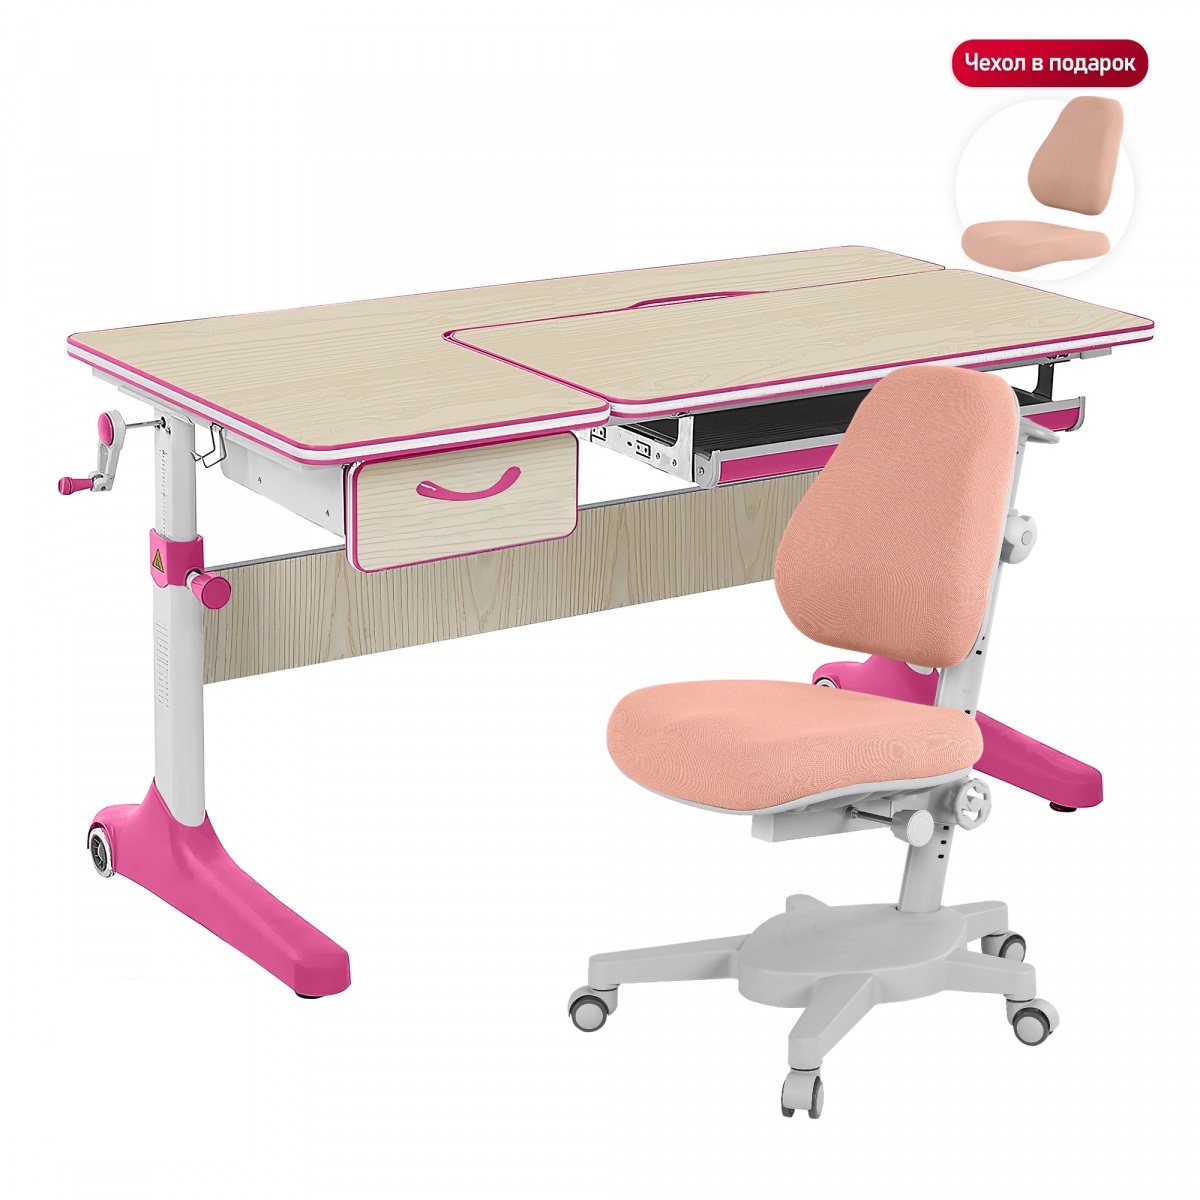 Комплект Anatomica Uniqa Lite парта + кресло клен/серый с креслом Armata цвета розовый